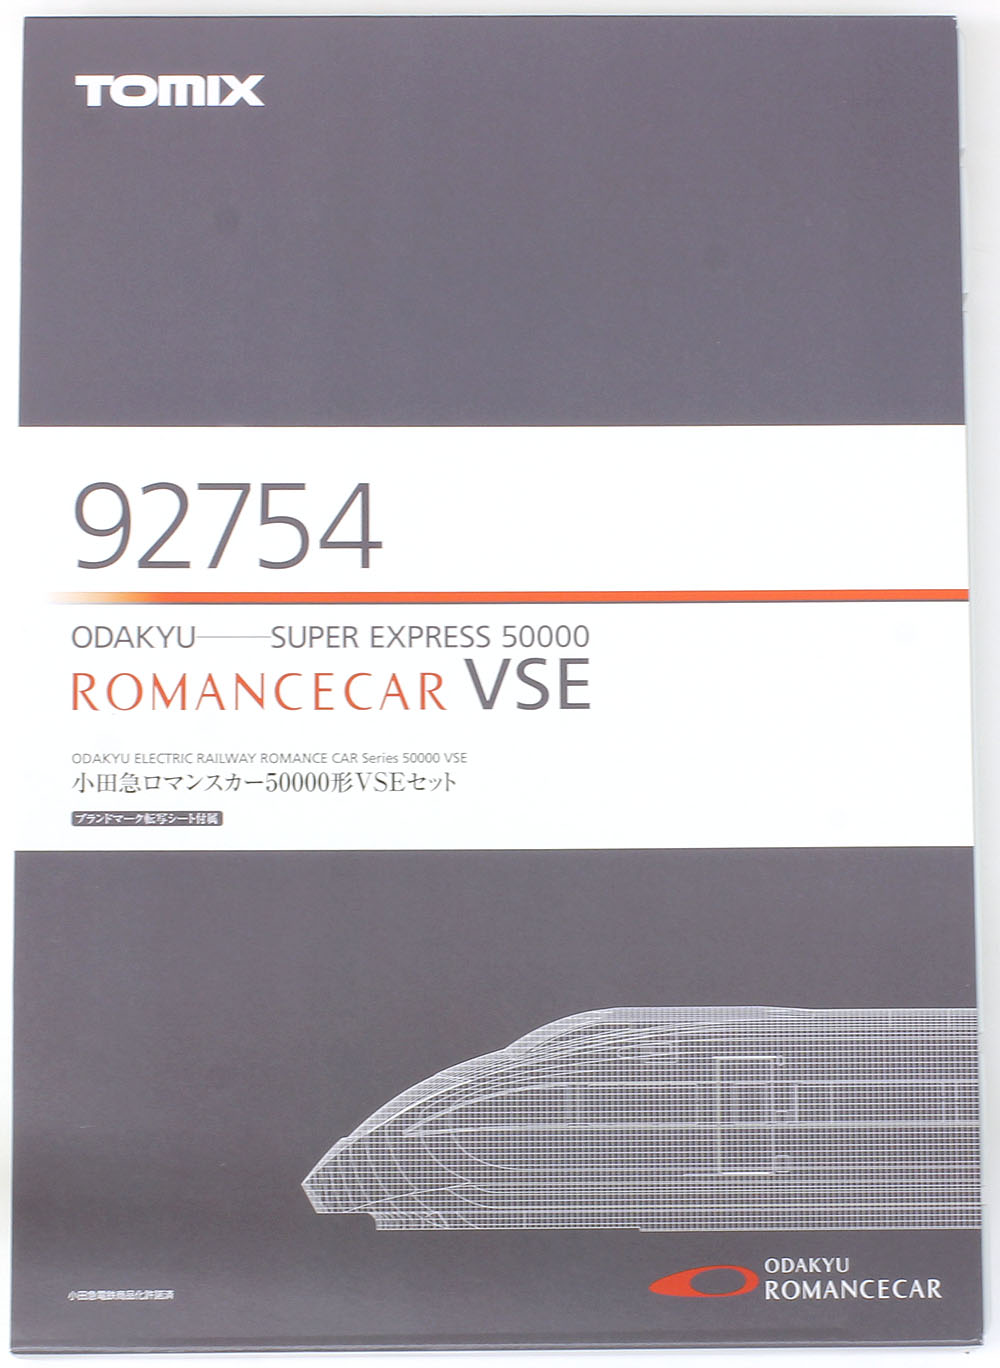 小田急ロマンスカー50000形VSE 10両セット | TOMIX(トミックス) 92754 